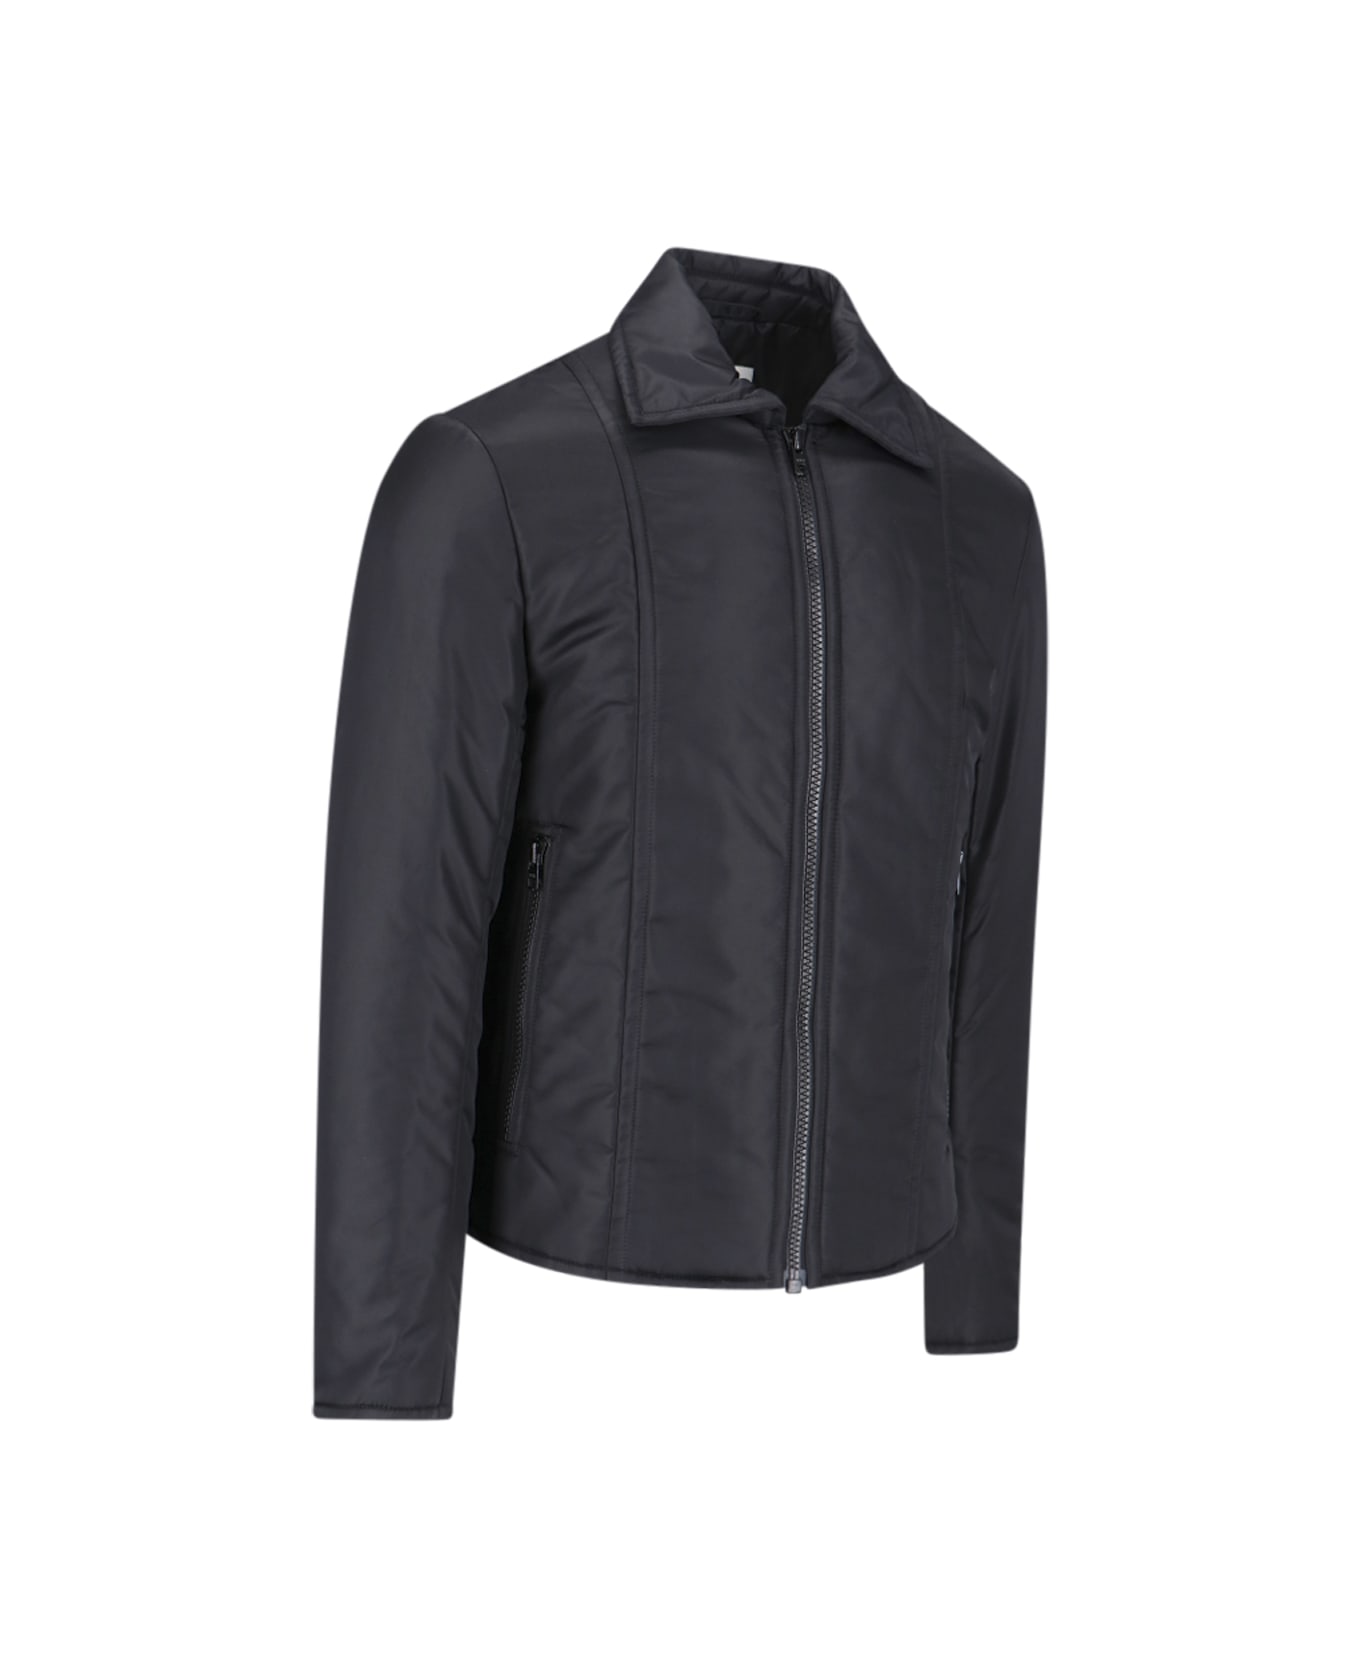 MM6 Maison Margiela Lightweight Jacket - Black レザージャケット